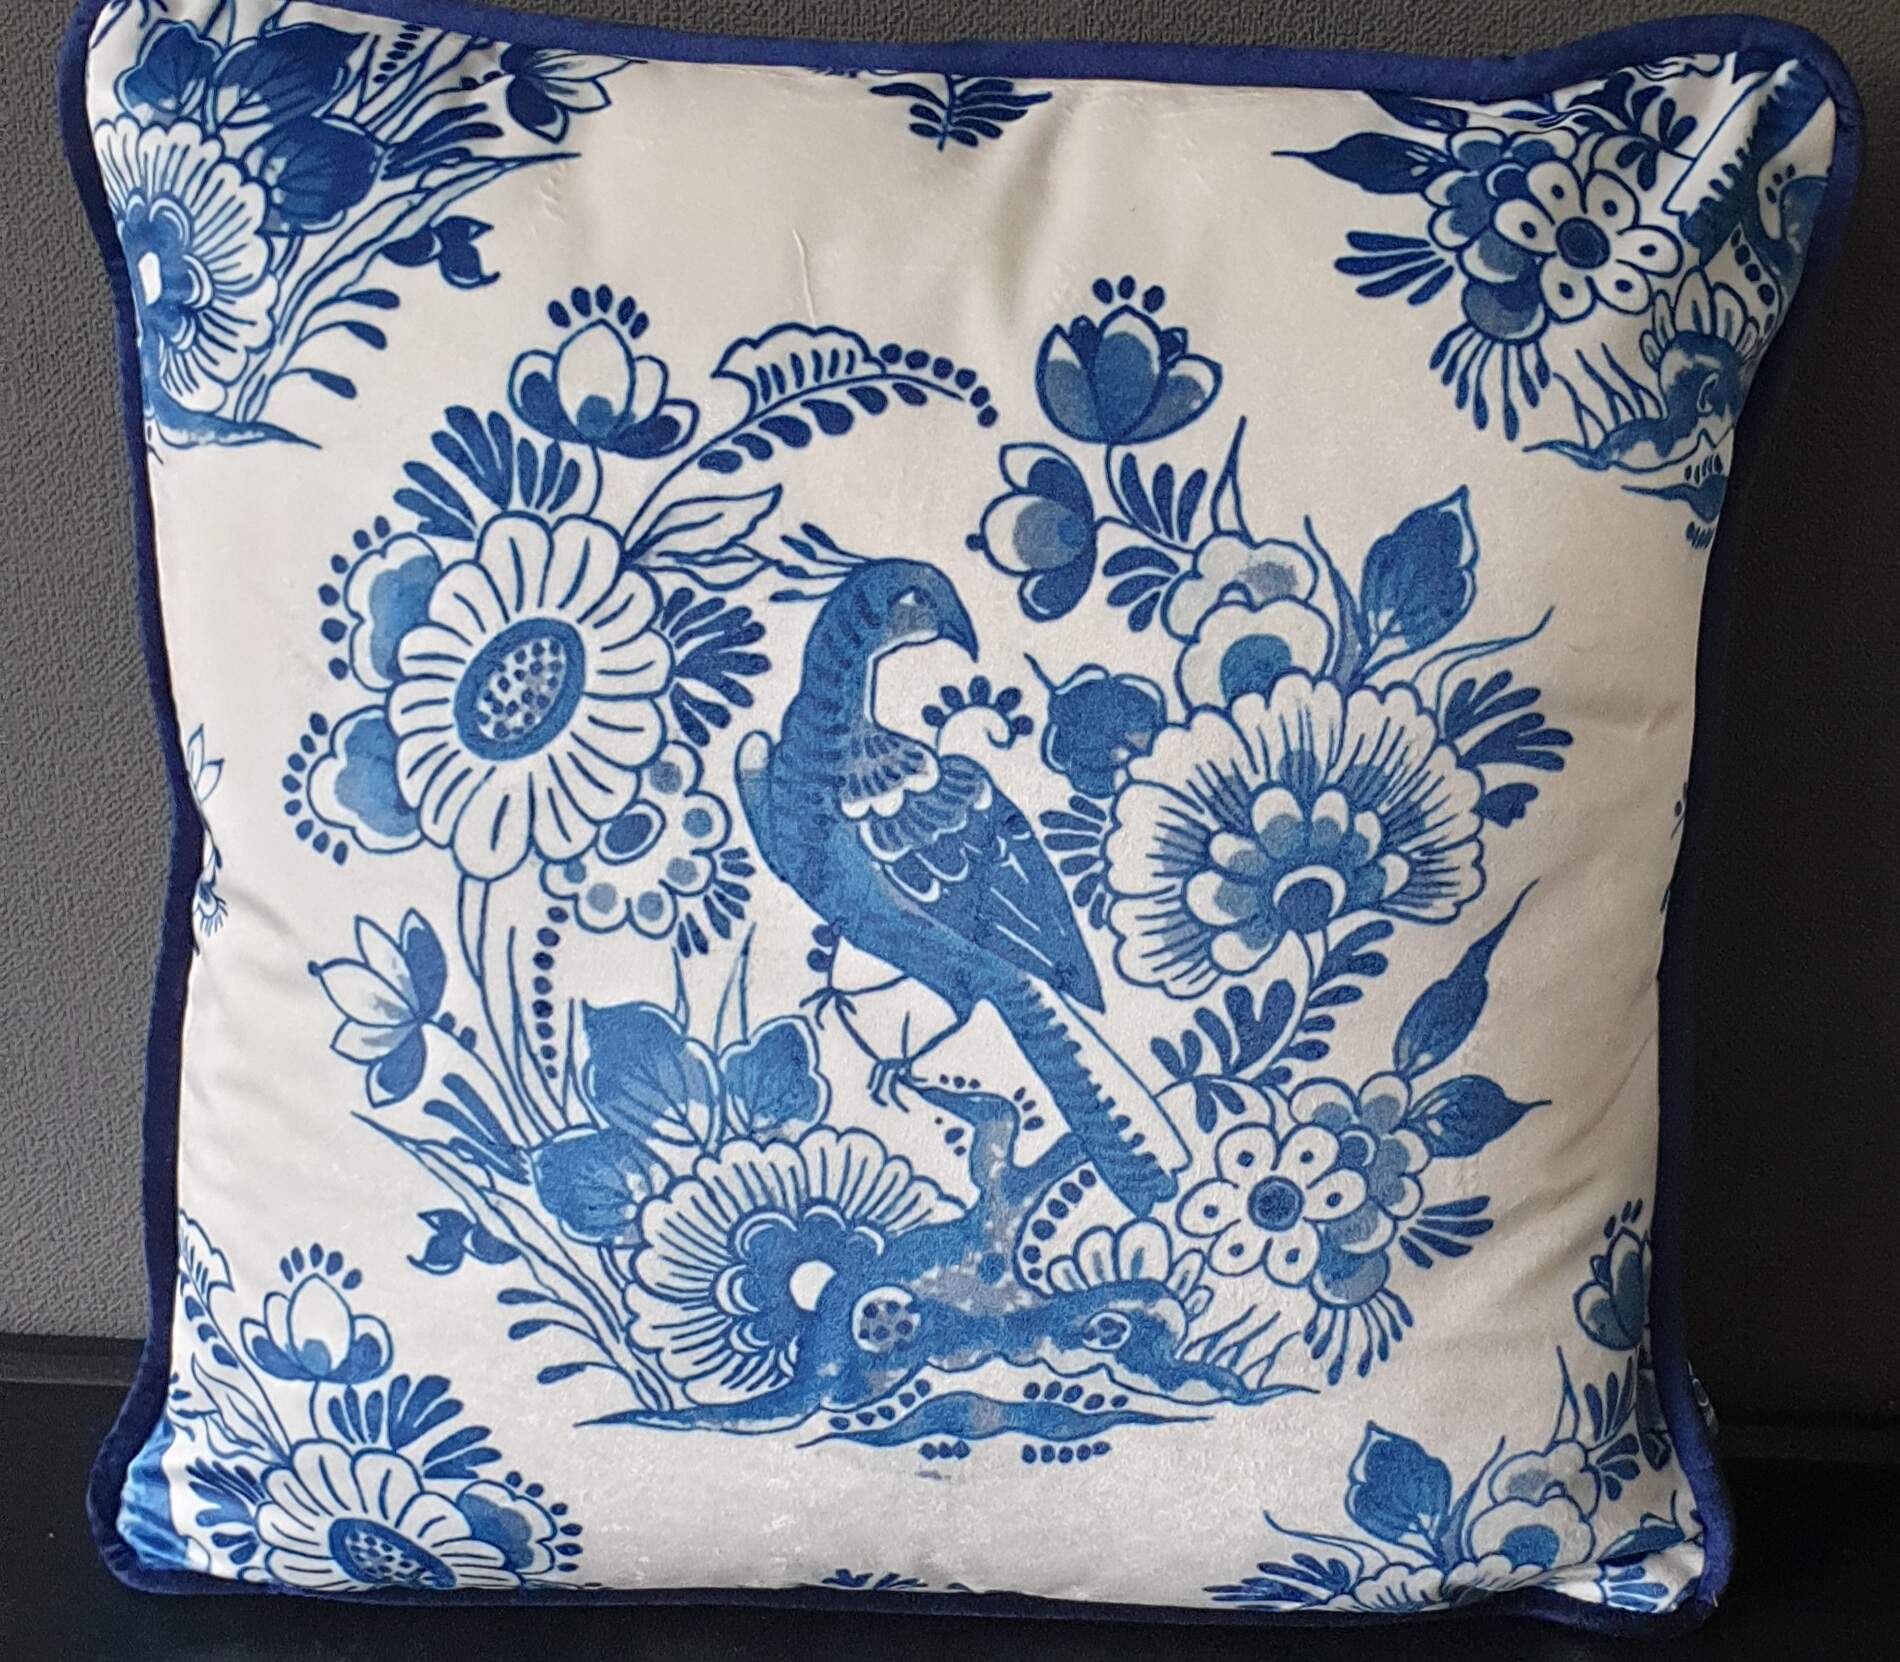 COCO maison, blauw, wit velours kussen Dutch met vogelprint